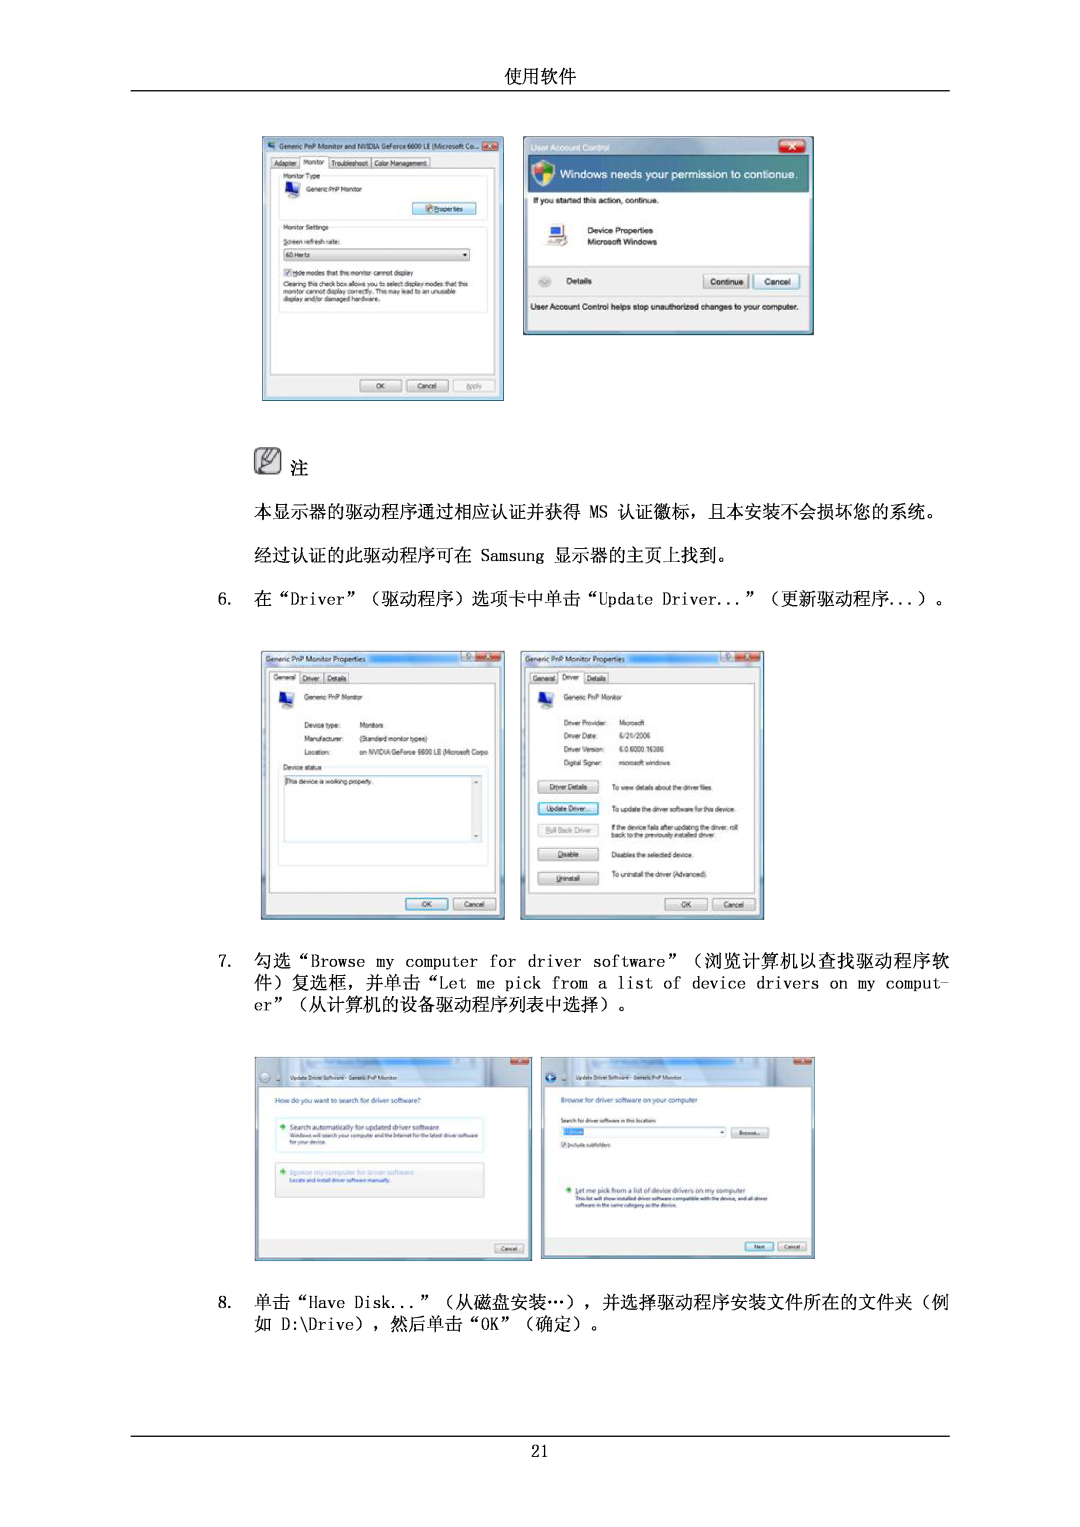 Samsung LS24KIEEFV/EDC, LS26KIERBV/EDC 使用软件, 本显示器的驱动程序通过相应认证并获得 Ms 认证徽标，且本安装不会损坏您的系统。, 经过认证的此驱动程序可在 Samsung 显示器的主页上找到。 